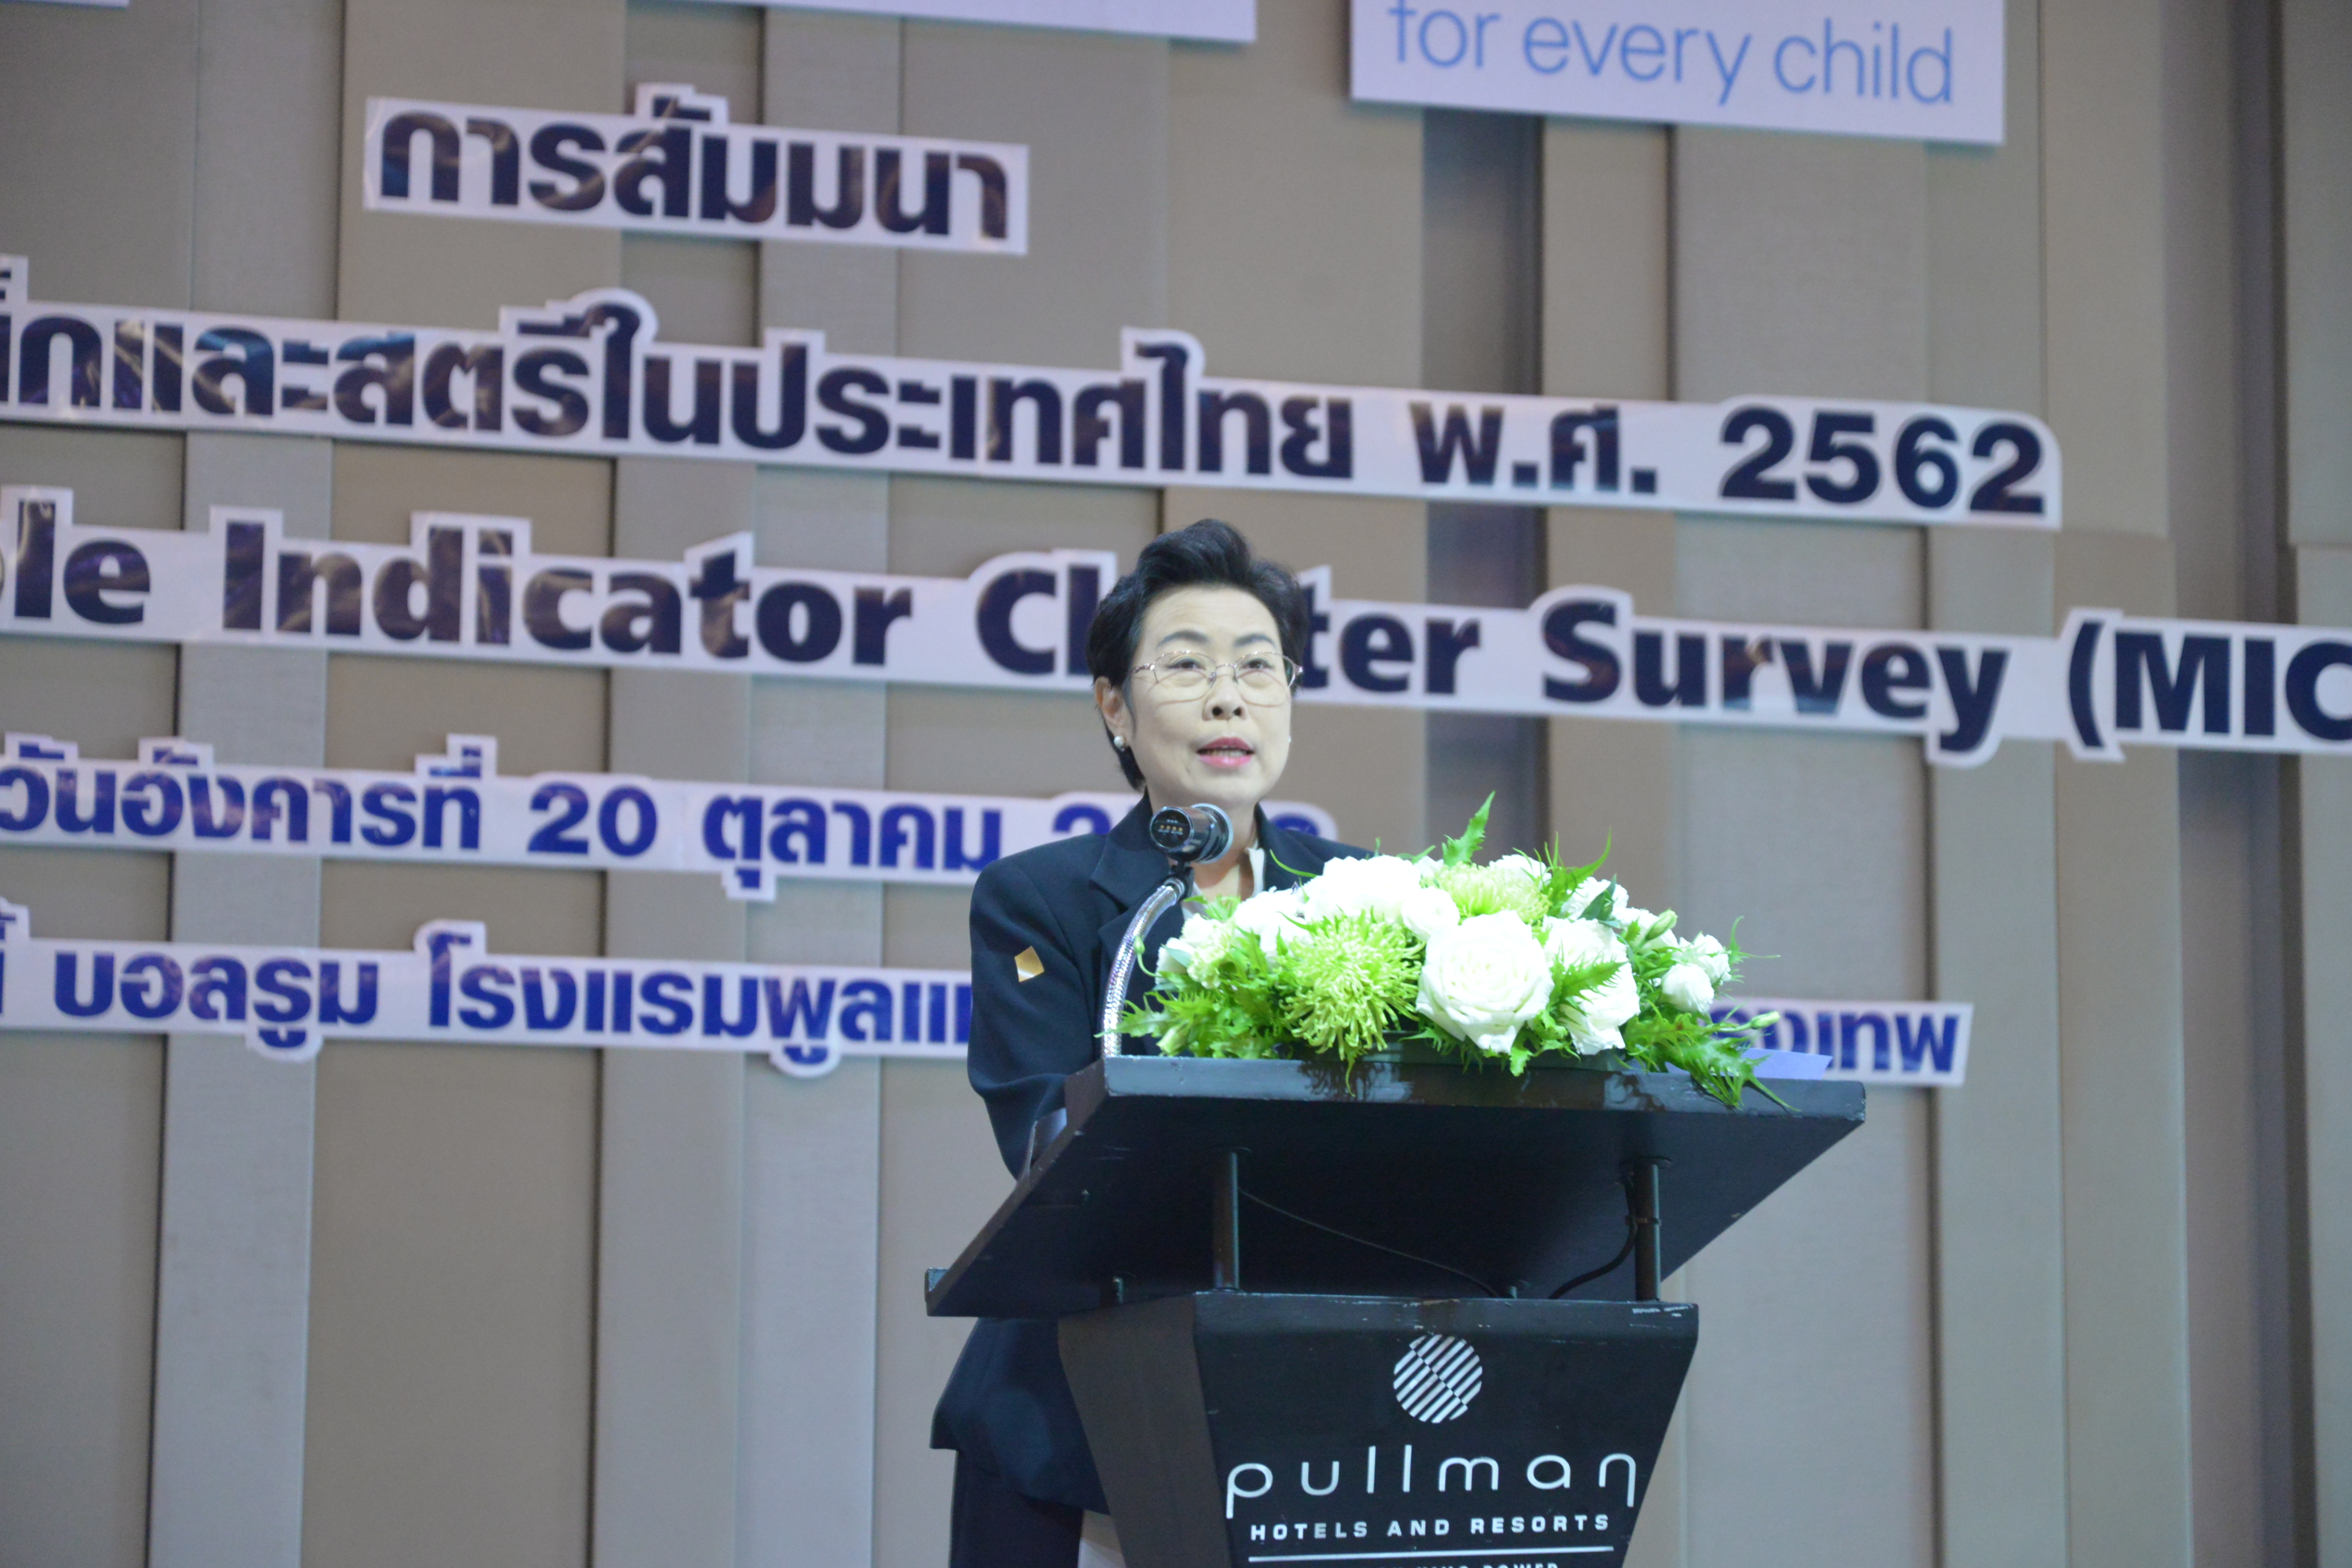 สสช. แถลงผลสำรวจสถานการณ์เด็กและสตรีในประเทศไทย พ.ศ. 2563 (MICS6)​